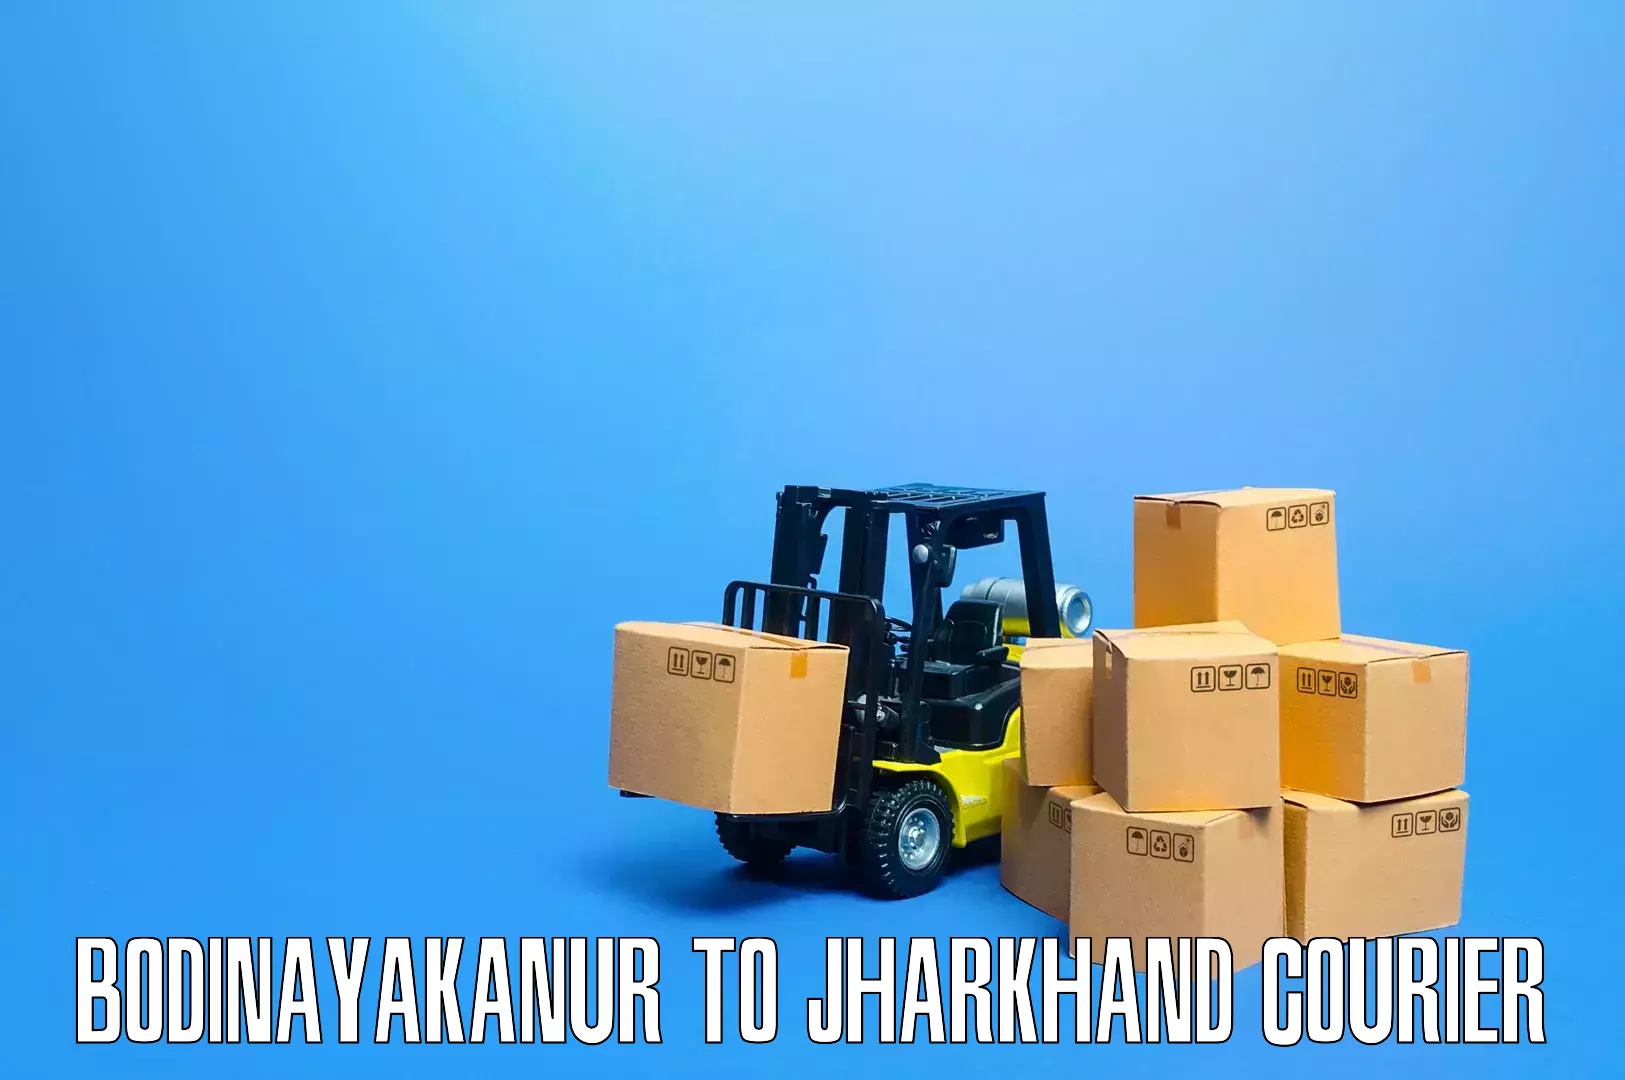 Expert furniture transport in Bodinayakanur to Tamar